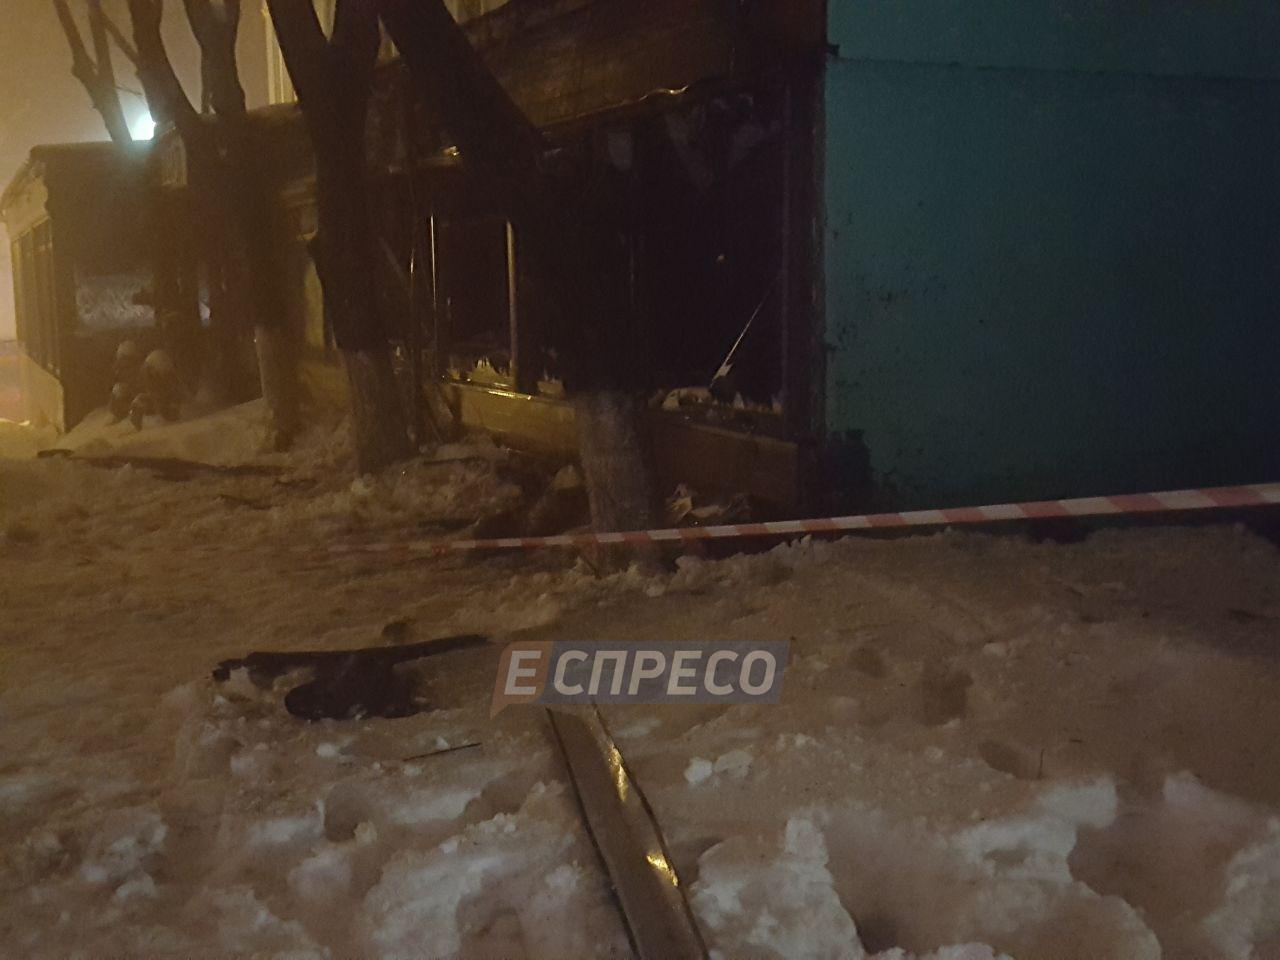 У центрі Києва з гранатомета розстріляли ресторан, - ЗМІ